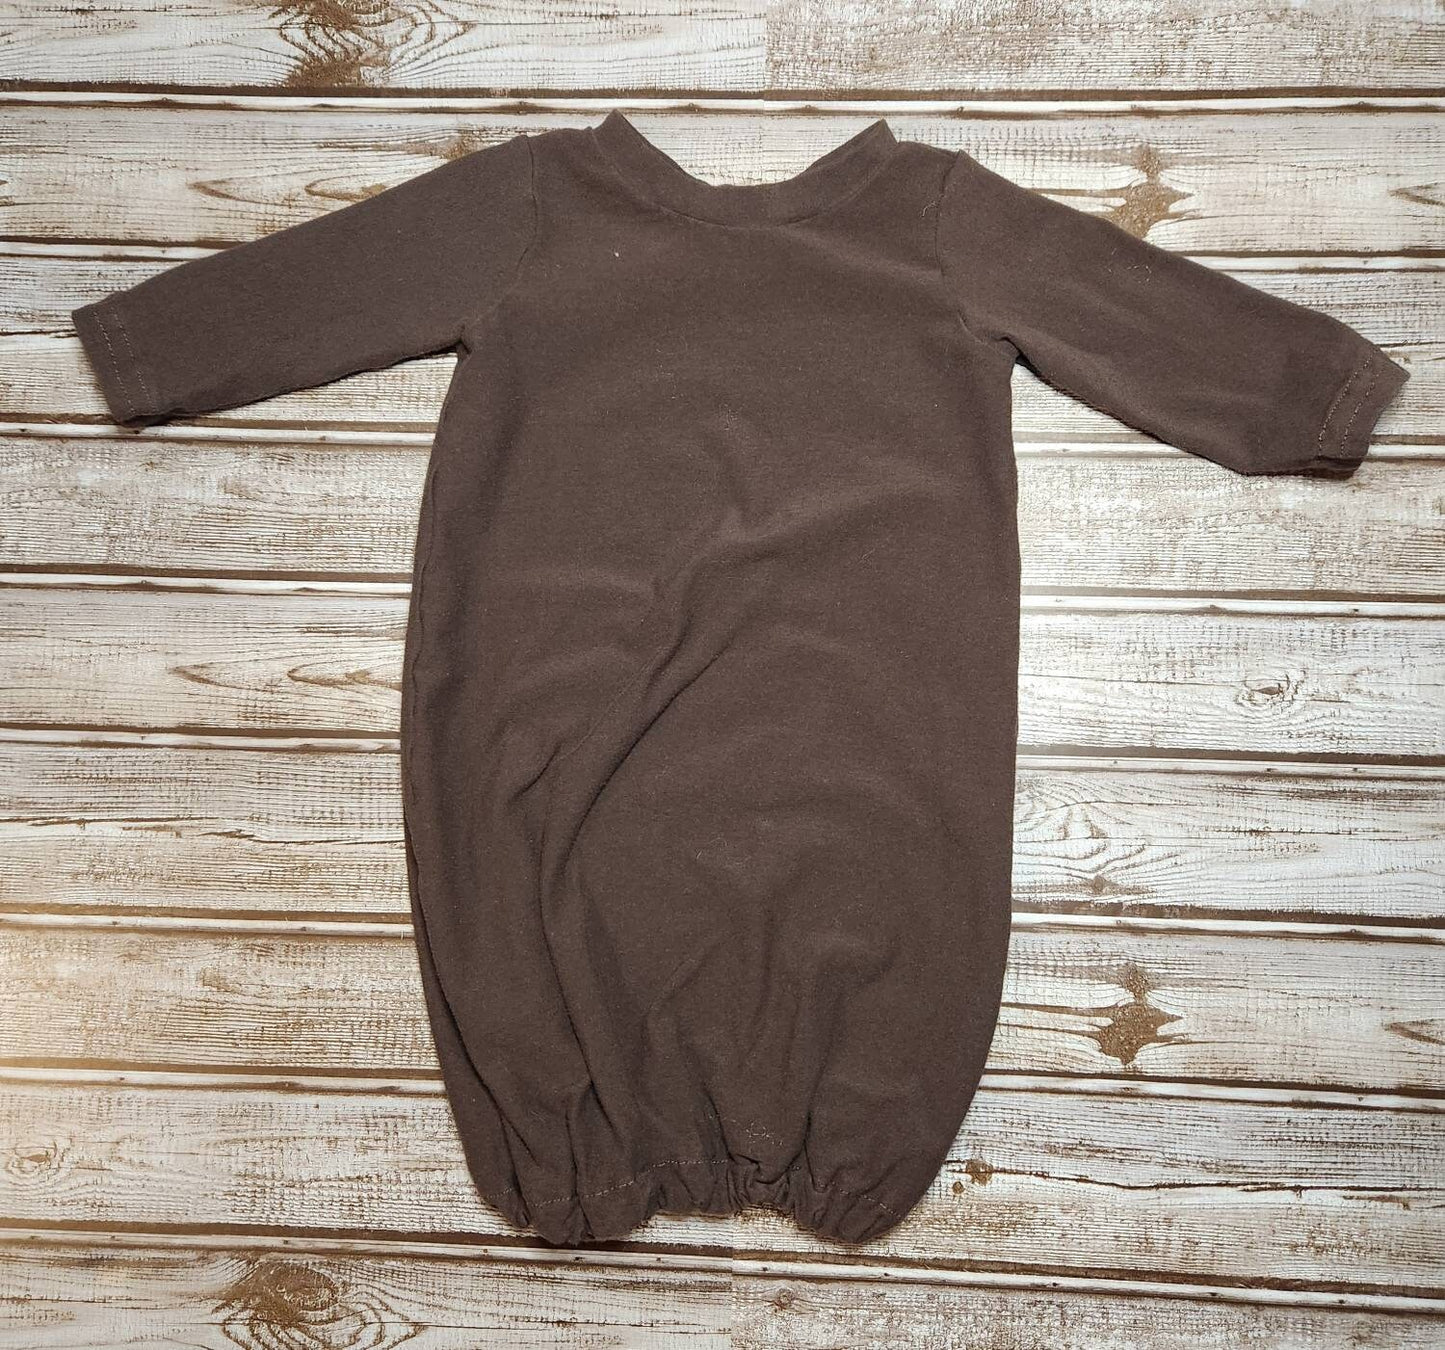 Baby Gown - Dark Brown - Size 0-3 month